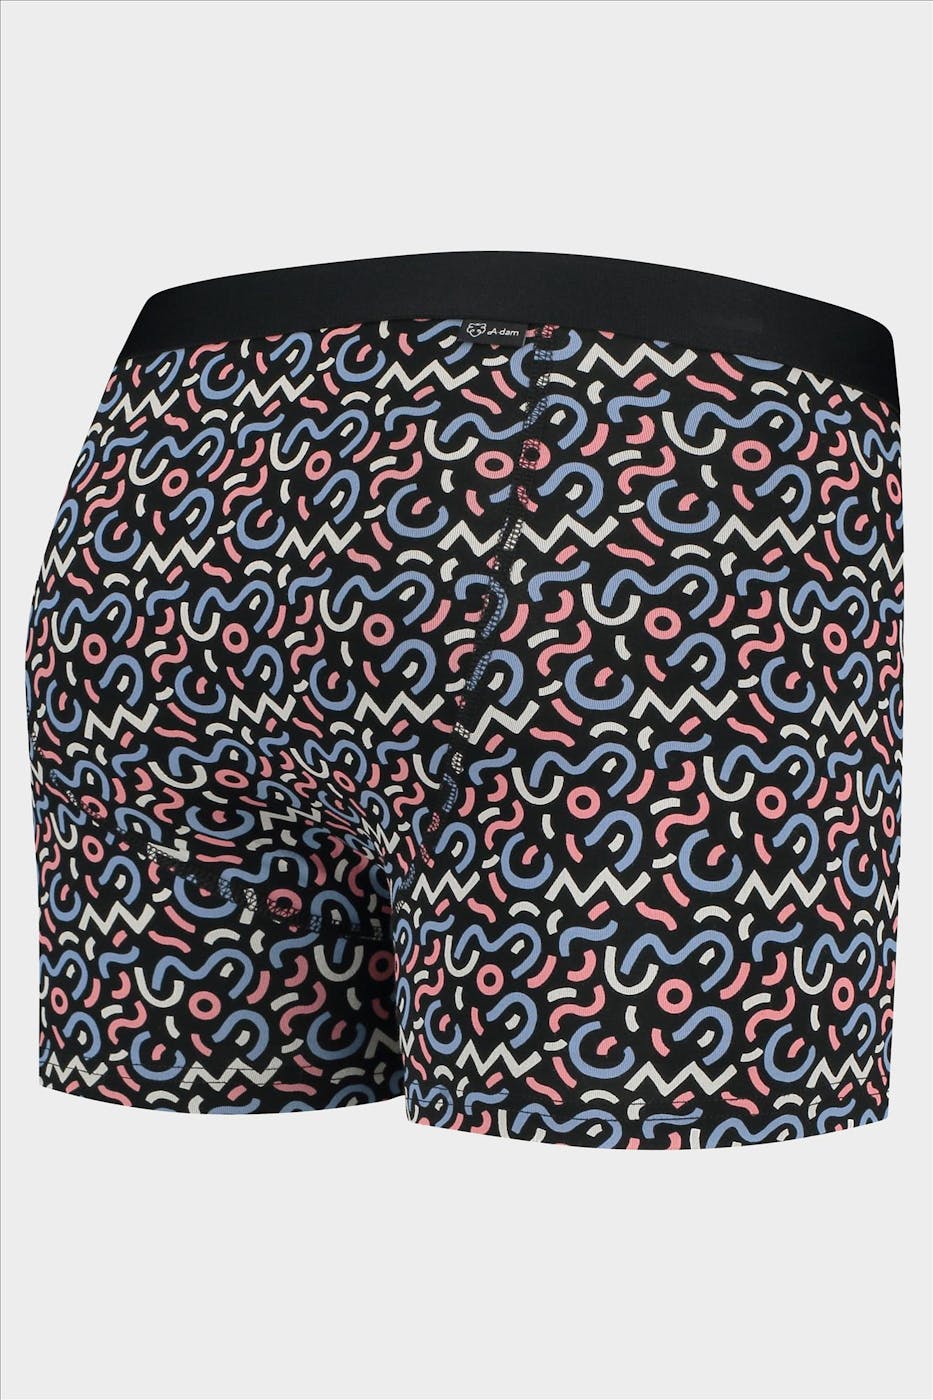 A'dam - Zwart-multicolour Melle boxershort